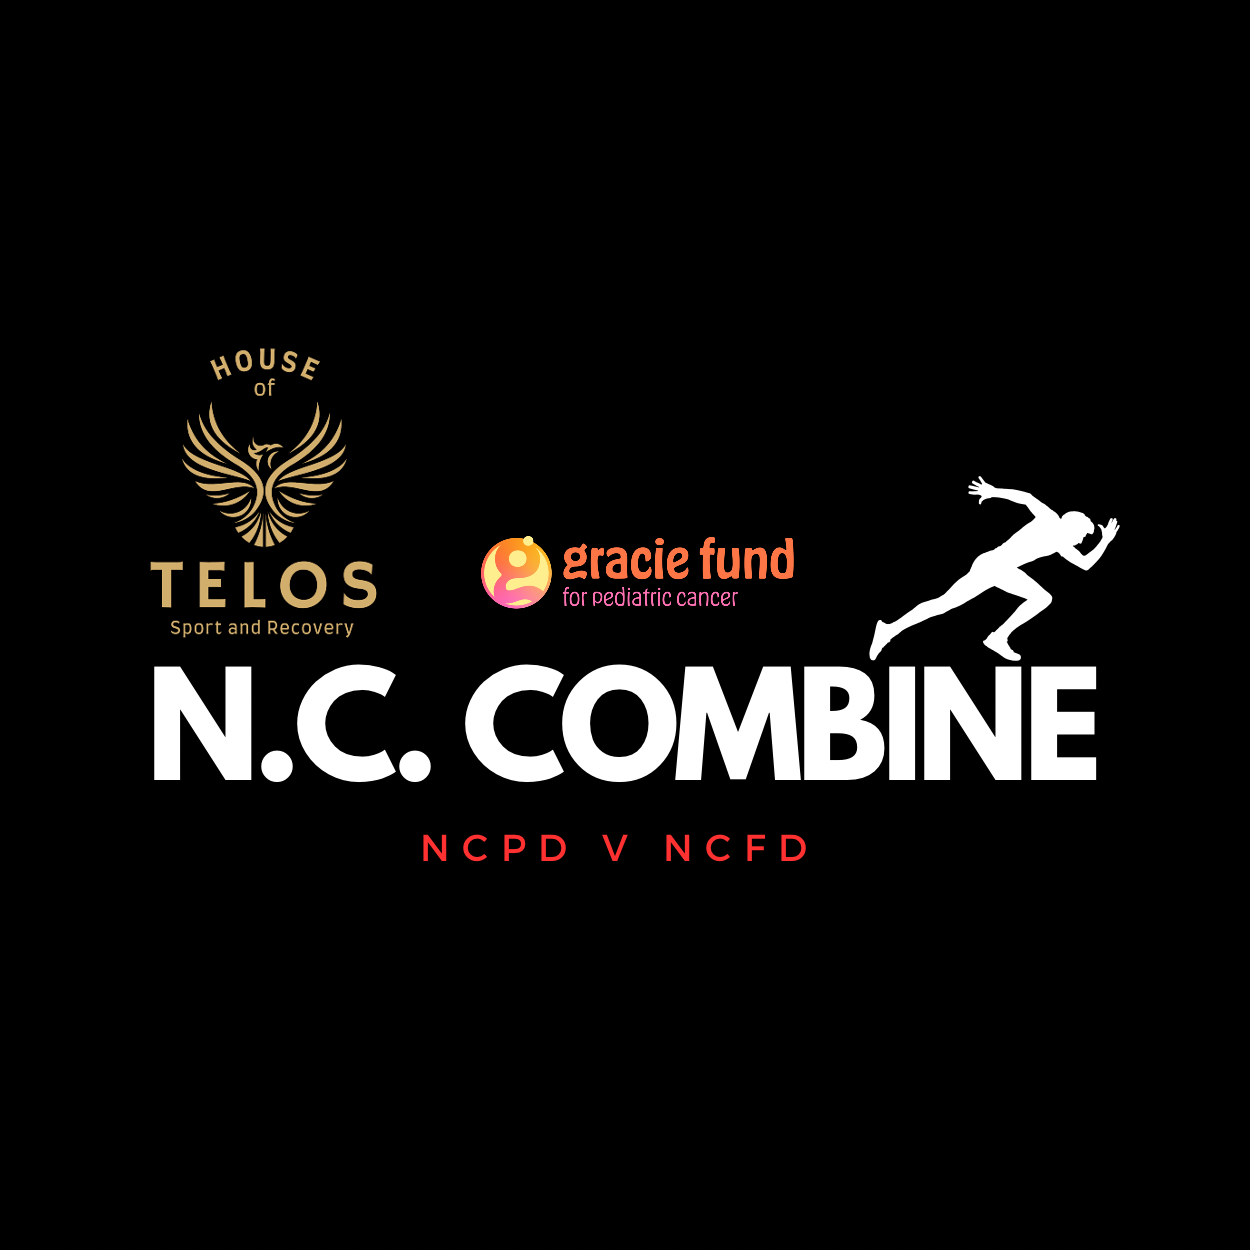 NCC combined logo for social media KKhhJh.tmp